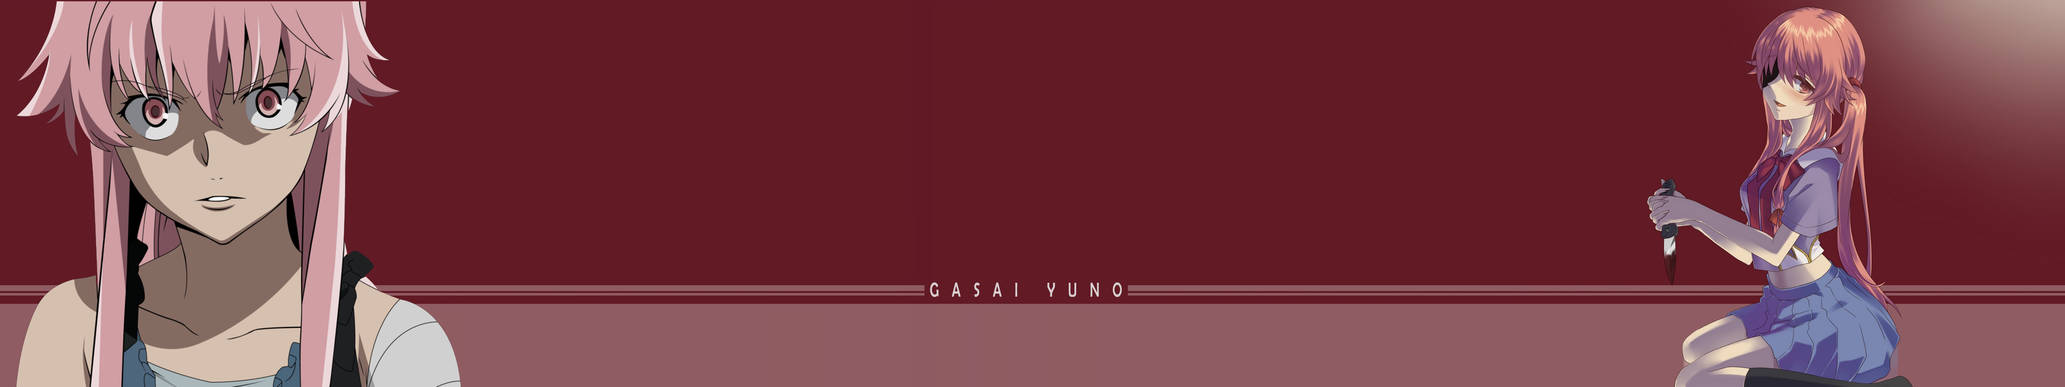 Gasai Yuno Triple screen wallpaper